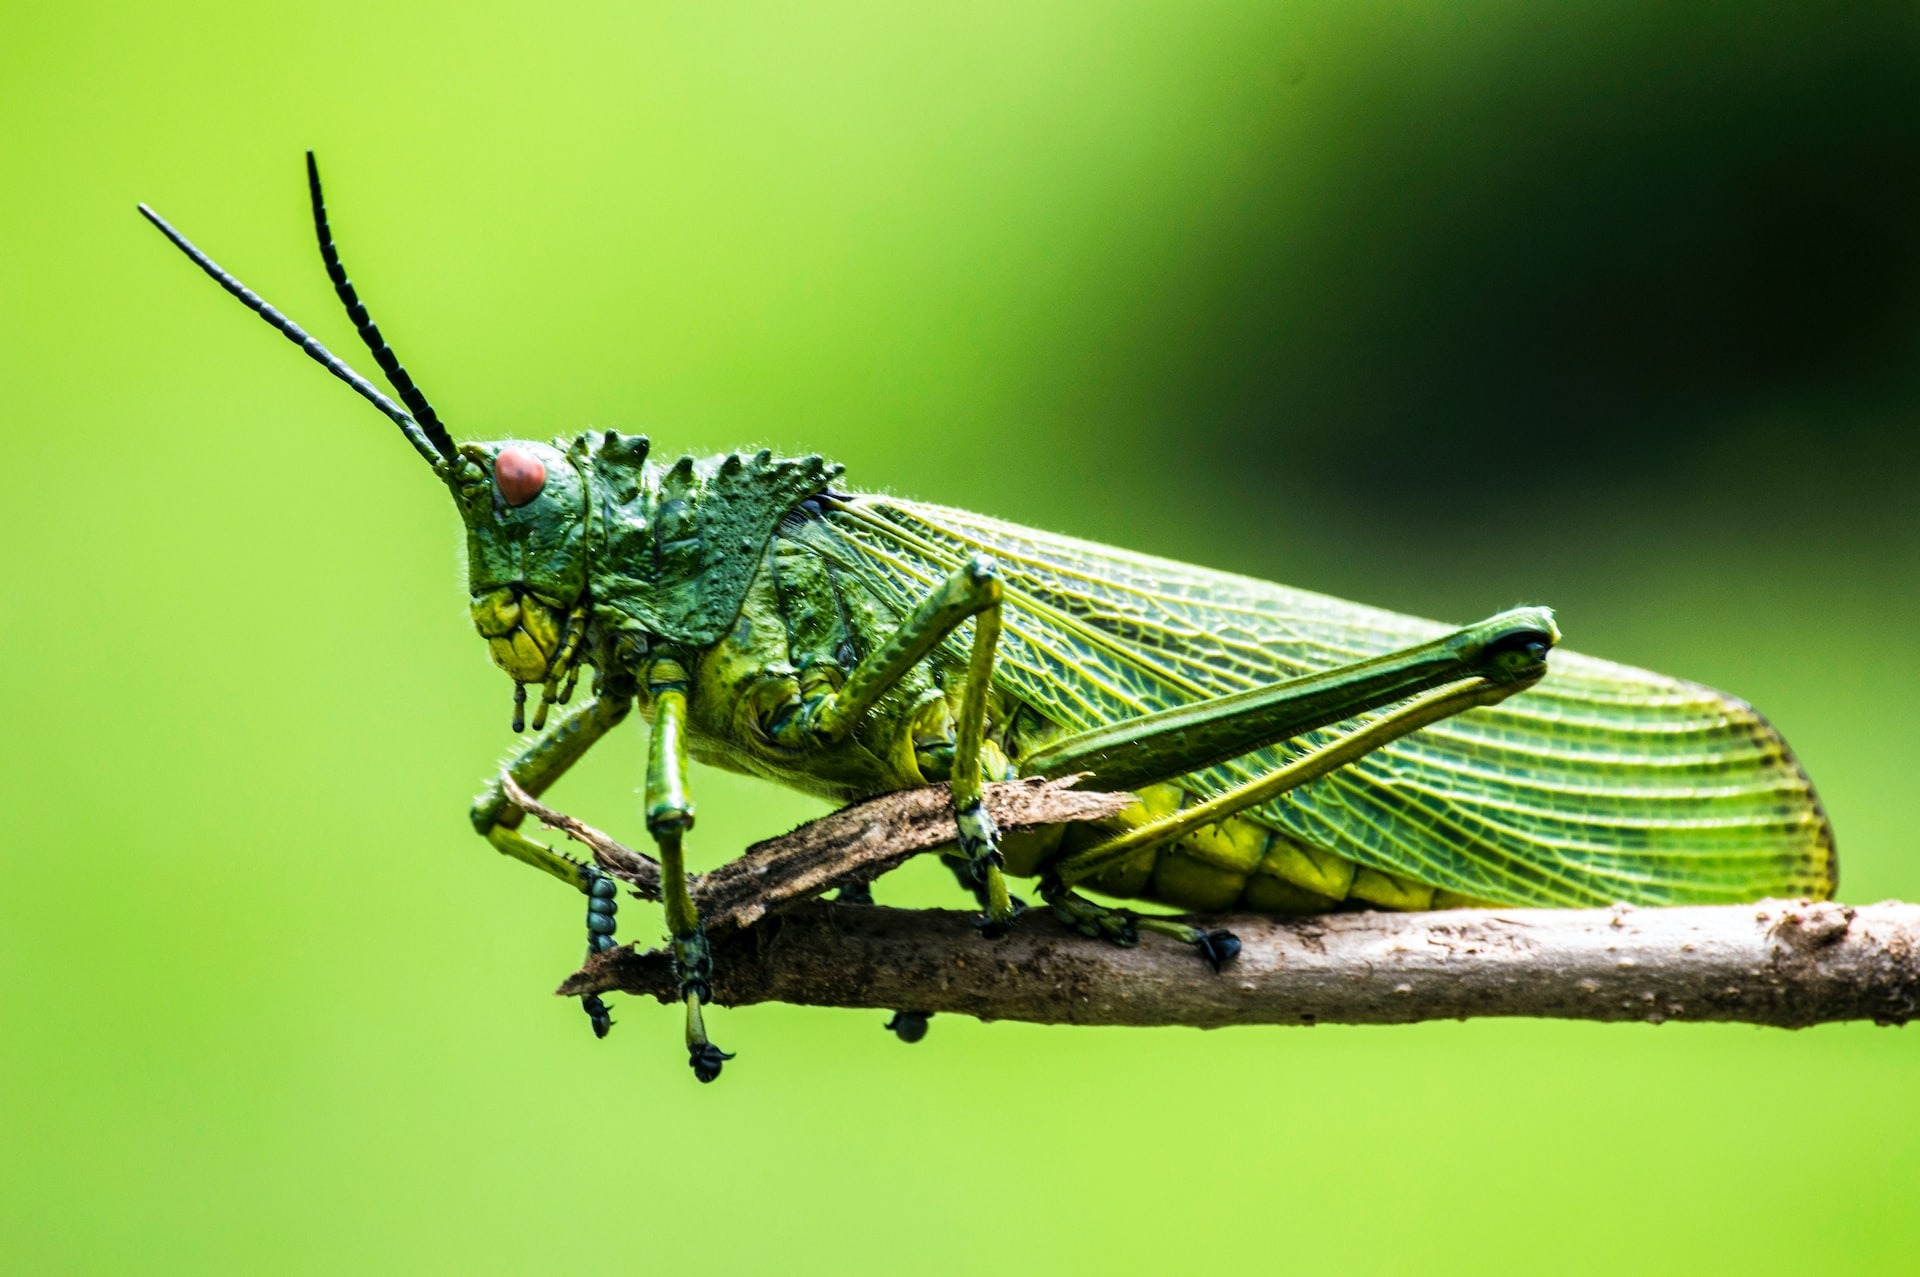 New material … hopping like a grasshopper